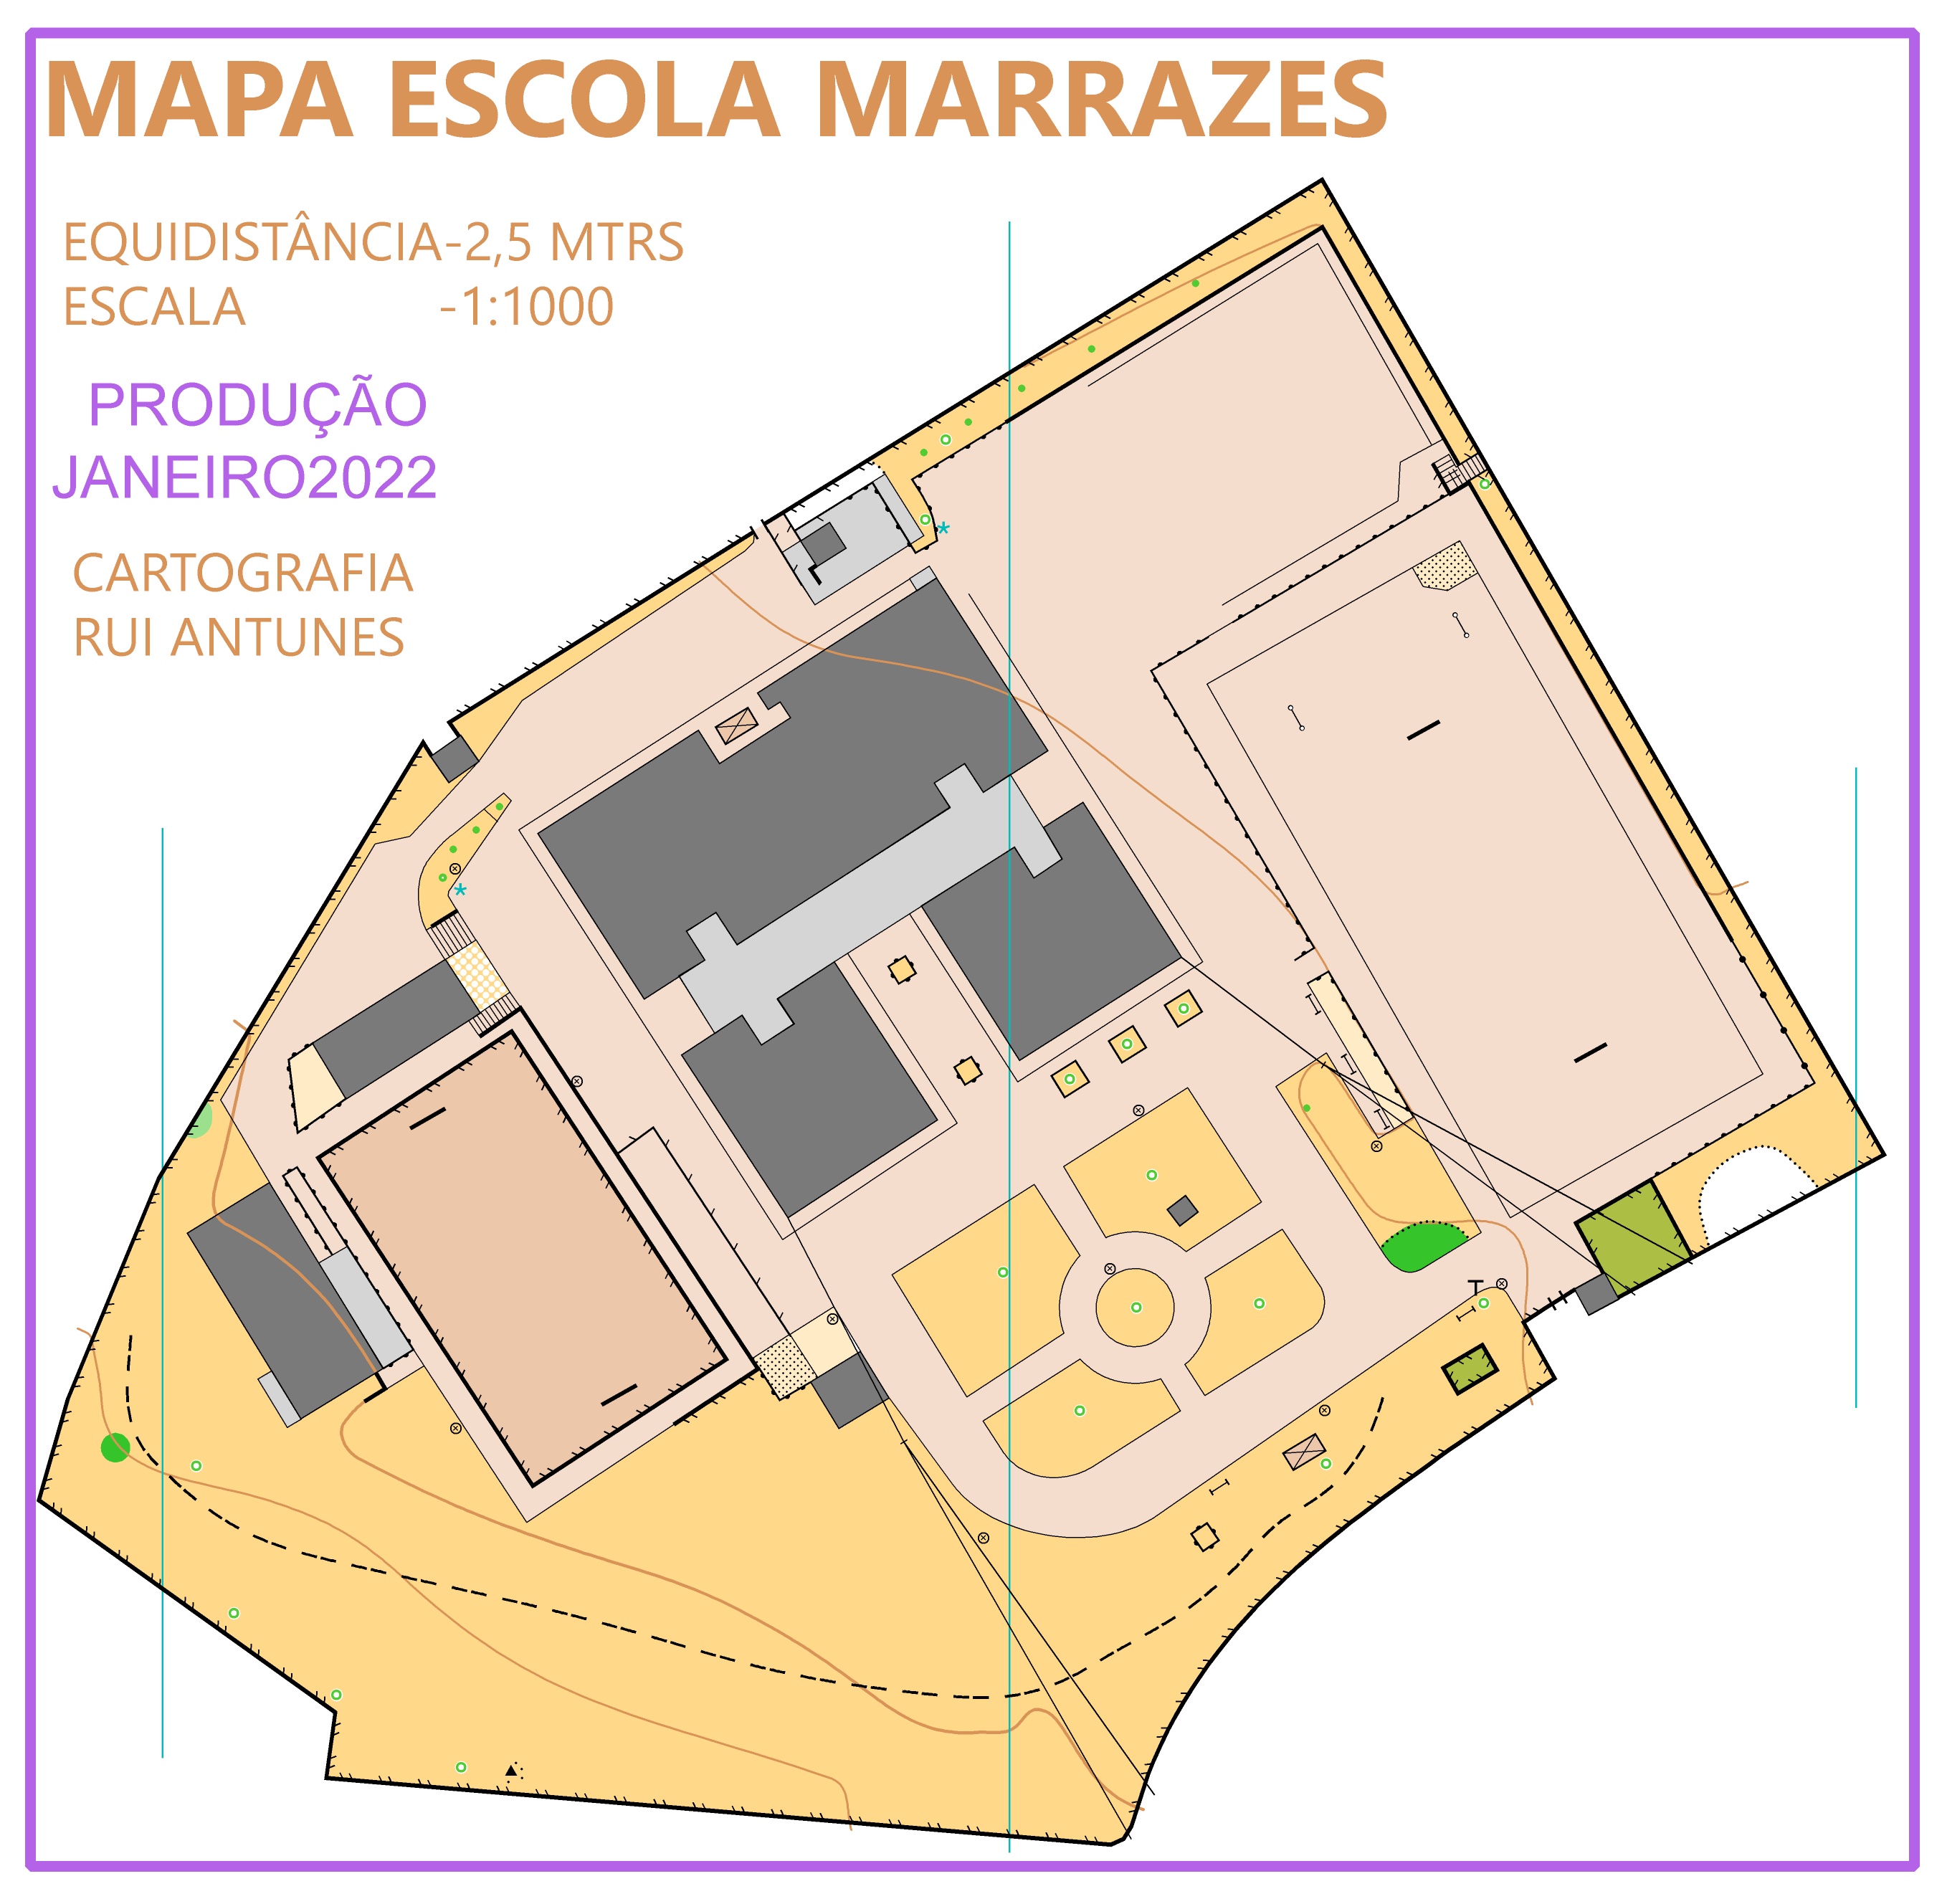 (264) - Mapa Escola Marrazes2022 - Portugal Janeiro 2022